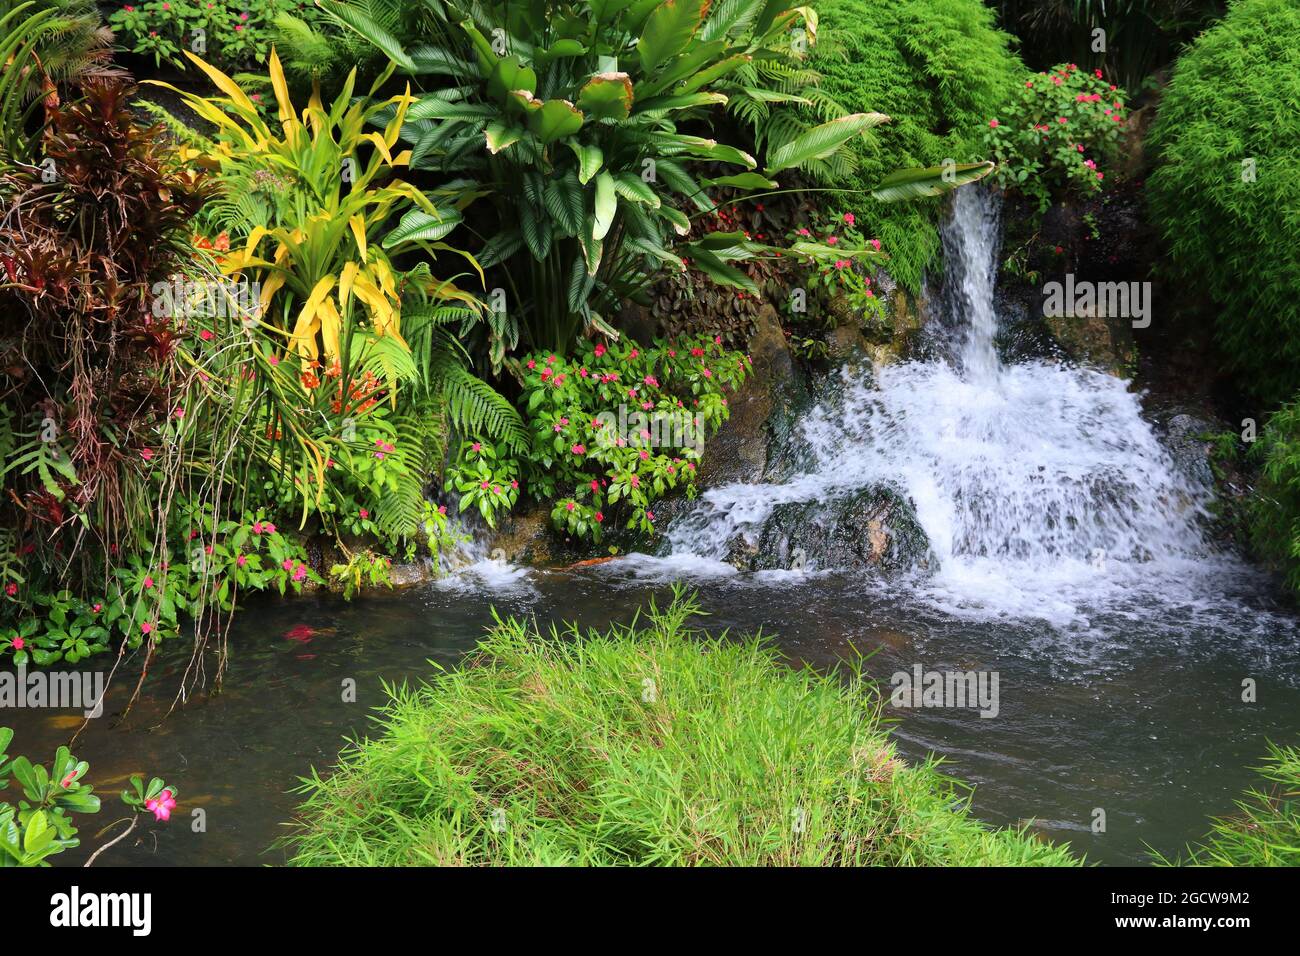 Guadalupa - Caraibi destinazione di vacanza. Il giardino botanico di Deshaies. Foto Stock